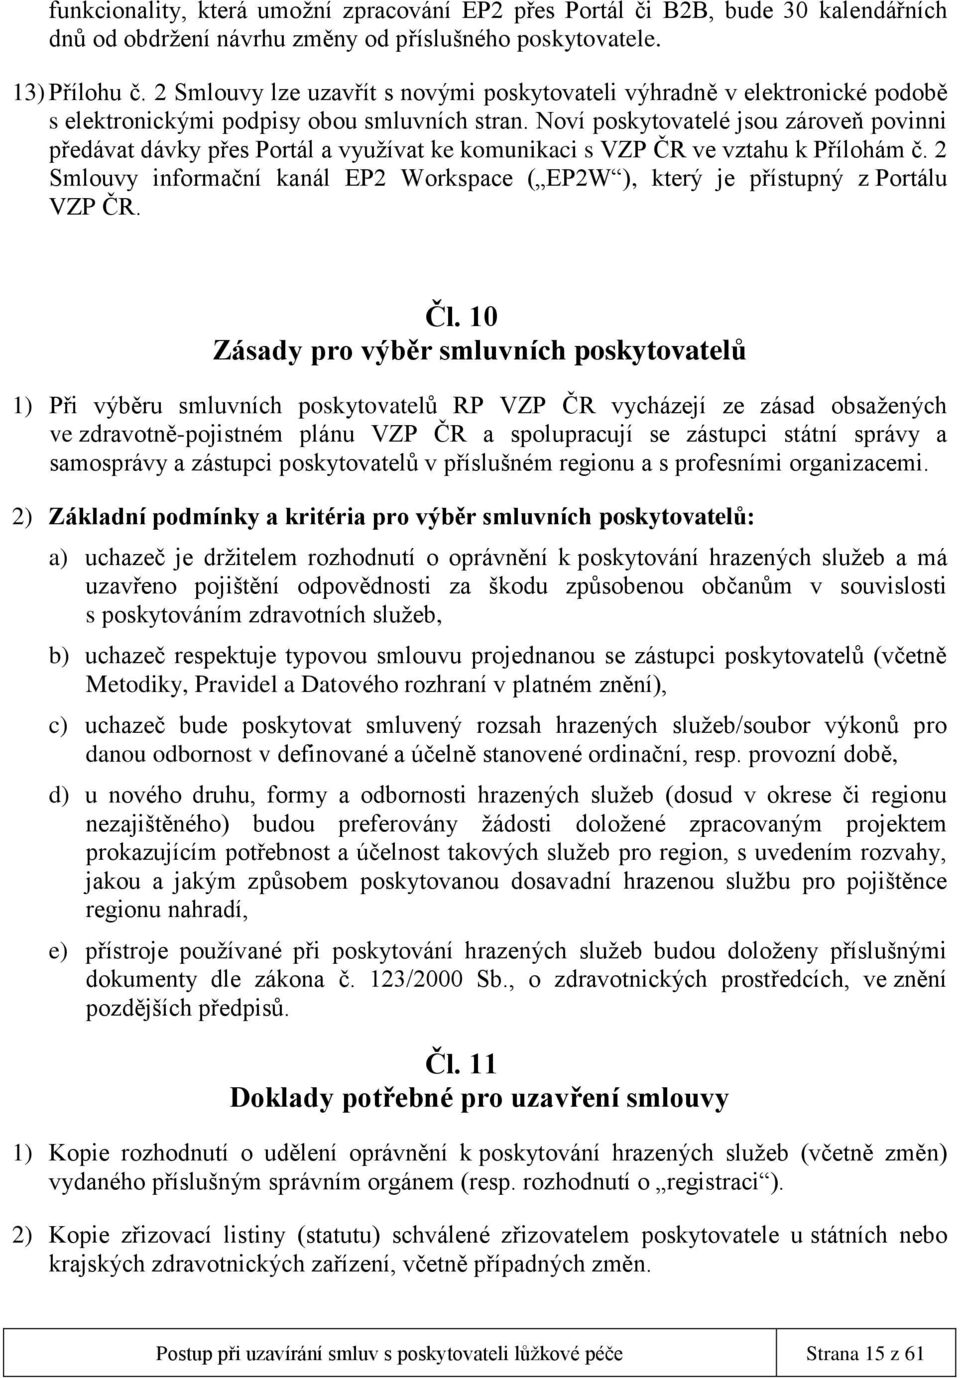 Noví poskytovatelé jsou zároveň povinni předávat dávky přes Portál a využívat ke komunikaci s VZP ČR ve vztahu k Přílohám č.